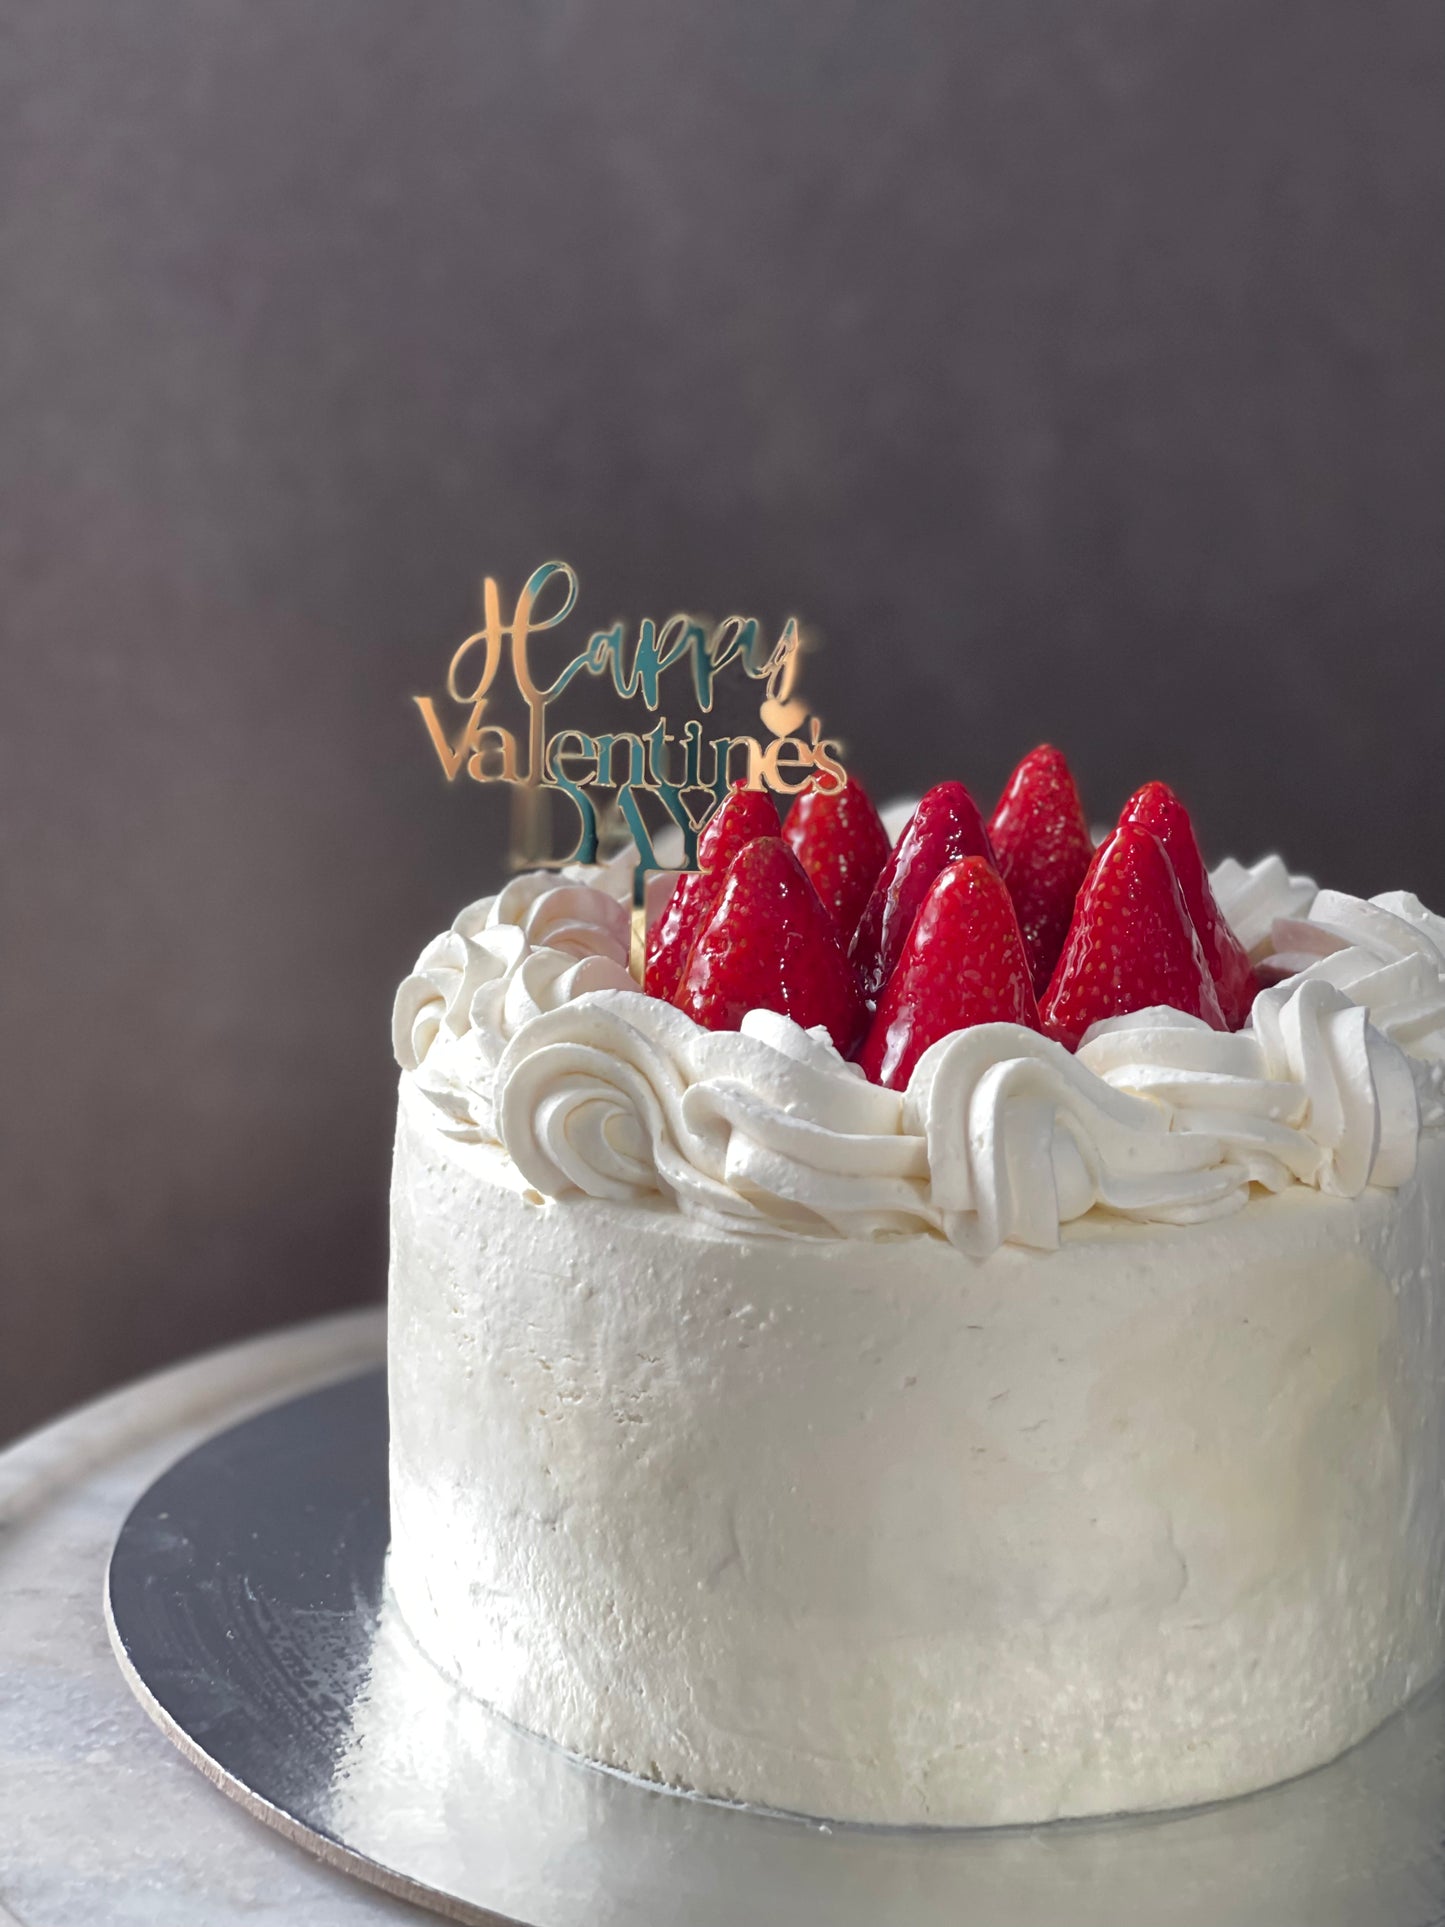 Strawberry Shortcake for Valentines Day